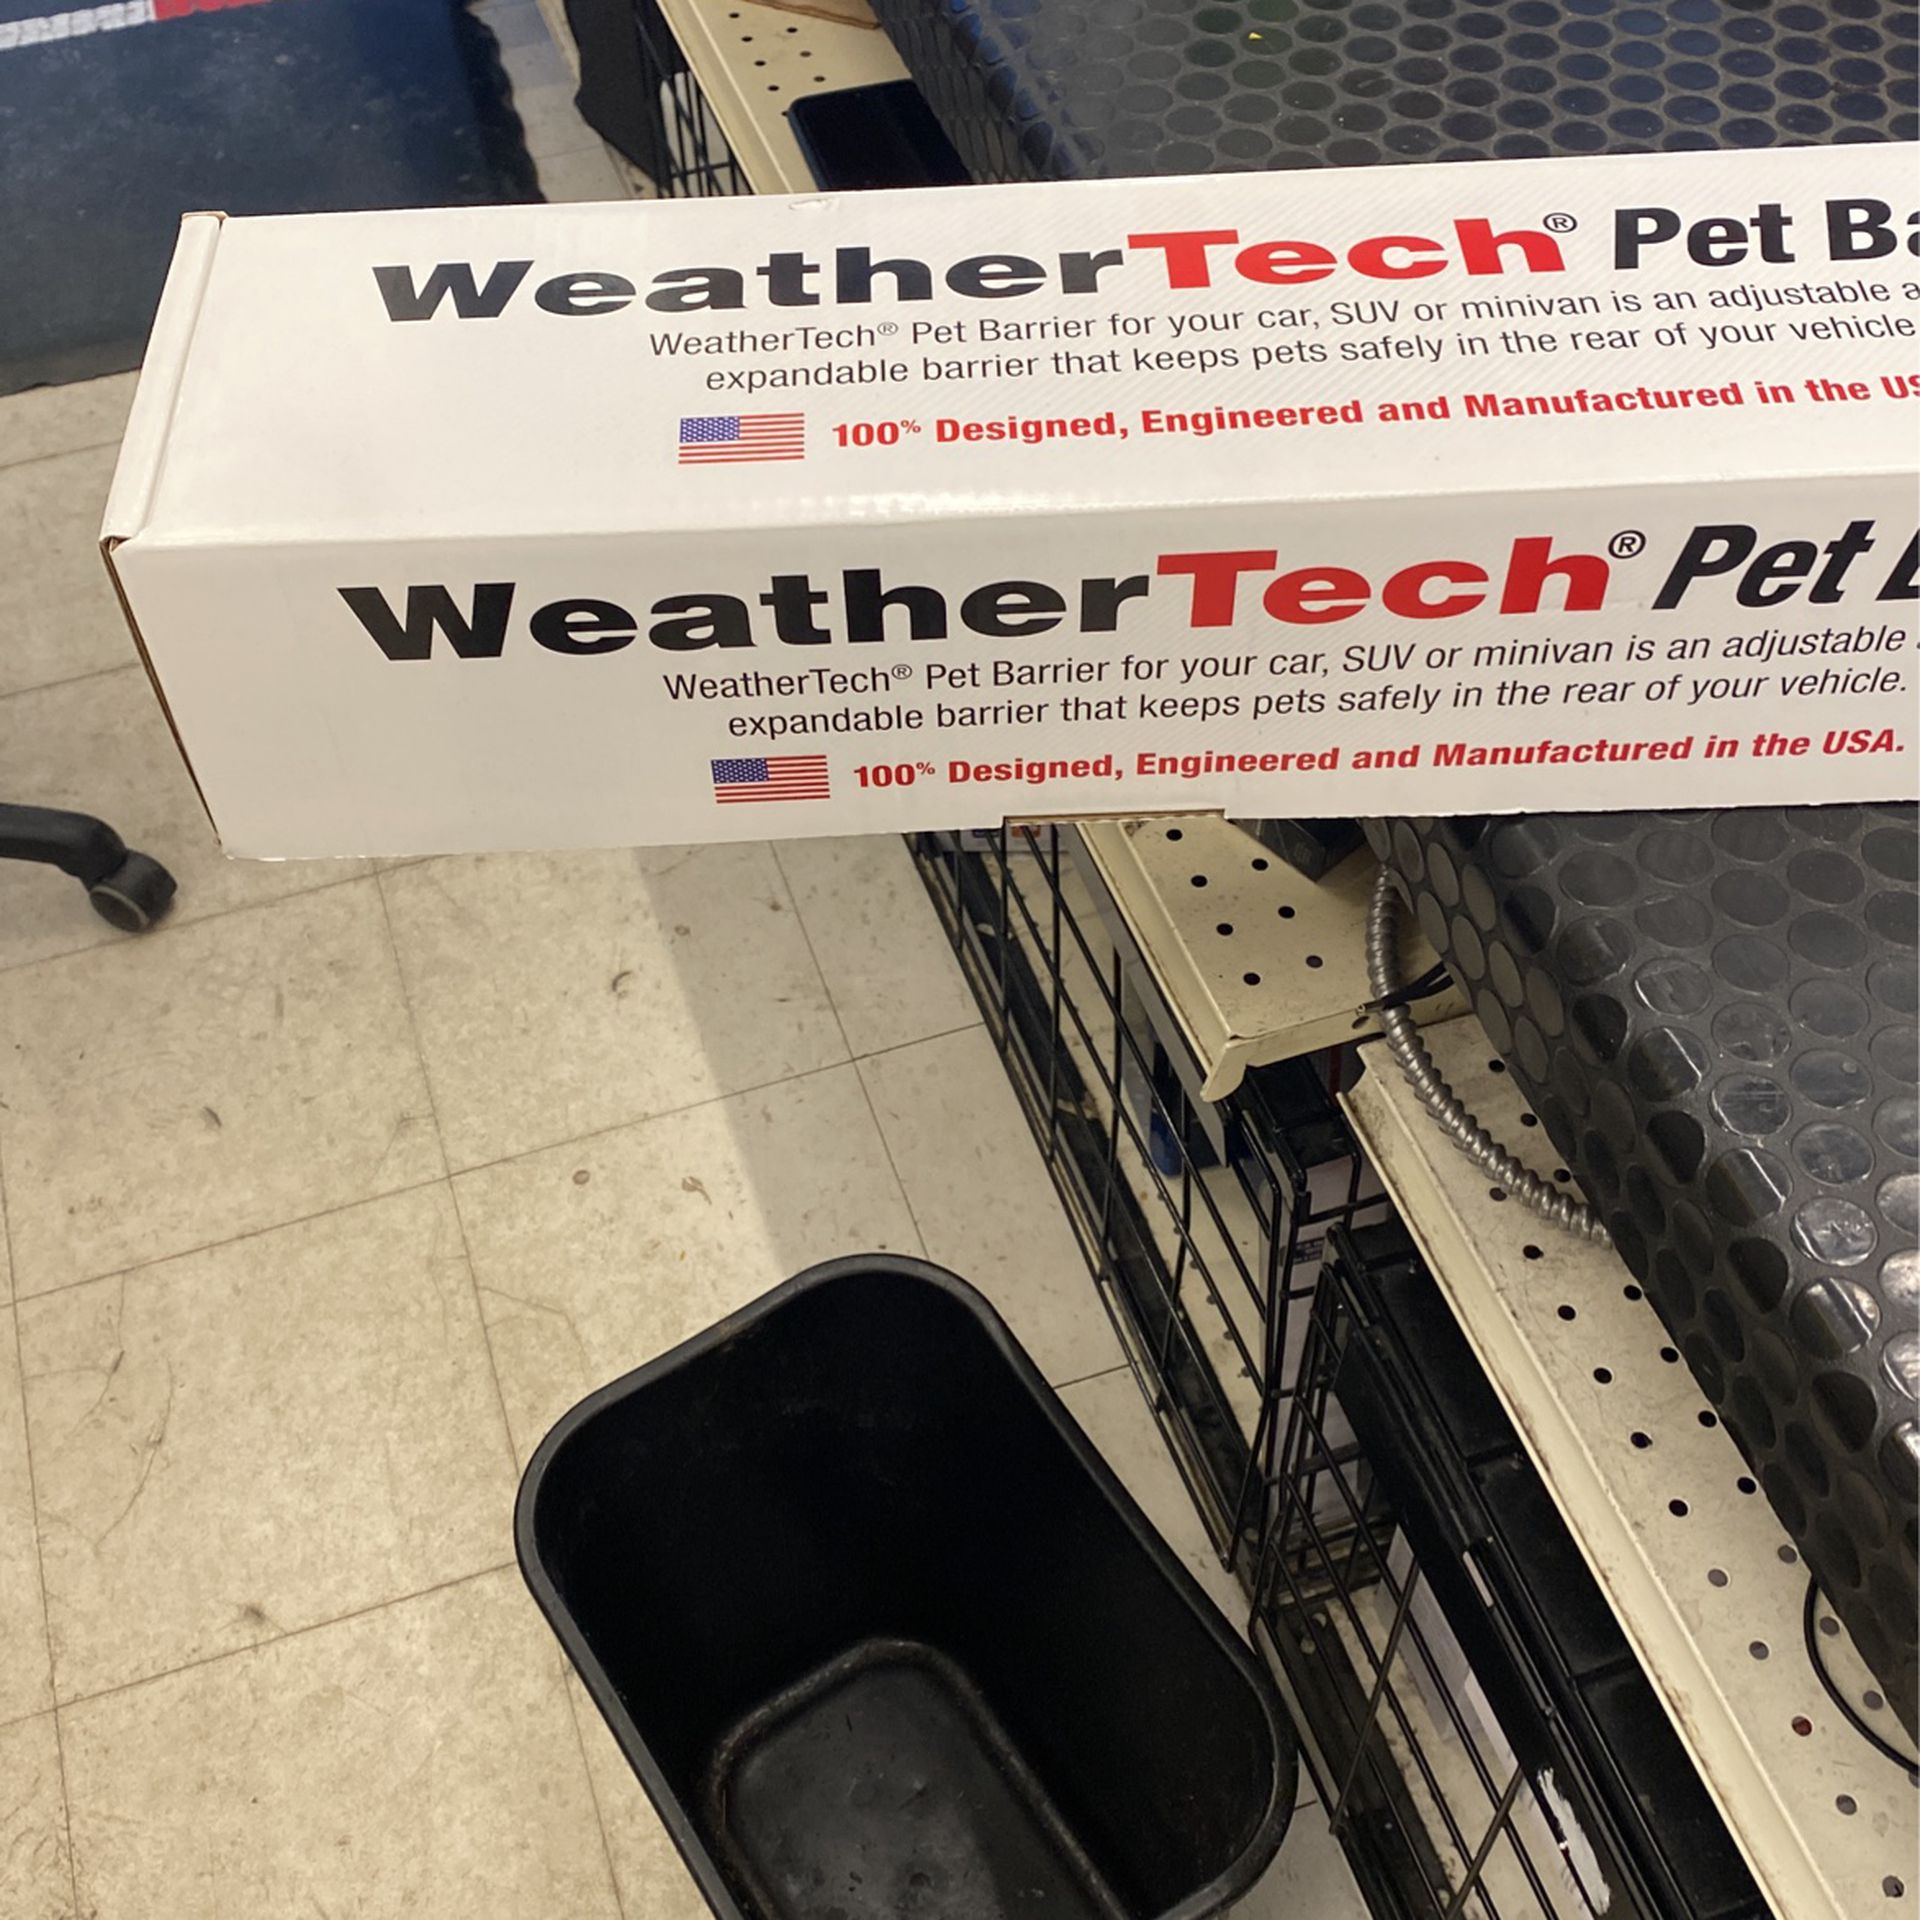 Weather tech Pet Barrier